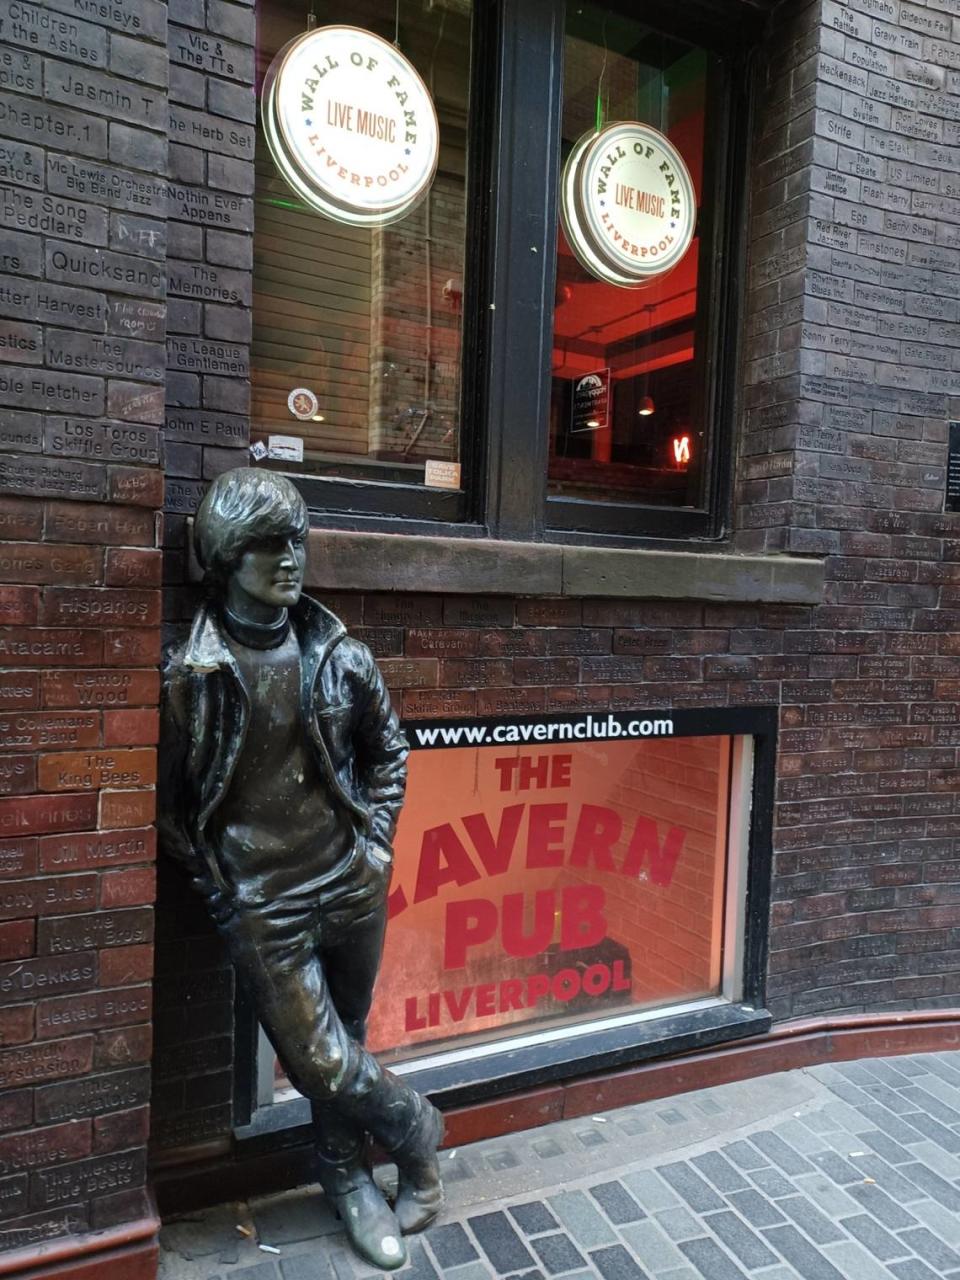 La discoteca Cavern Club, lugar de nacimiento de los Beatles, es una discoteca situada en el número 10 de Mathew Street, en Liverpool, Inglaterra.